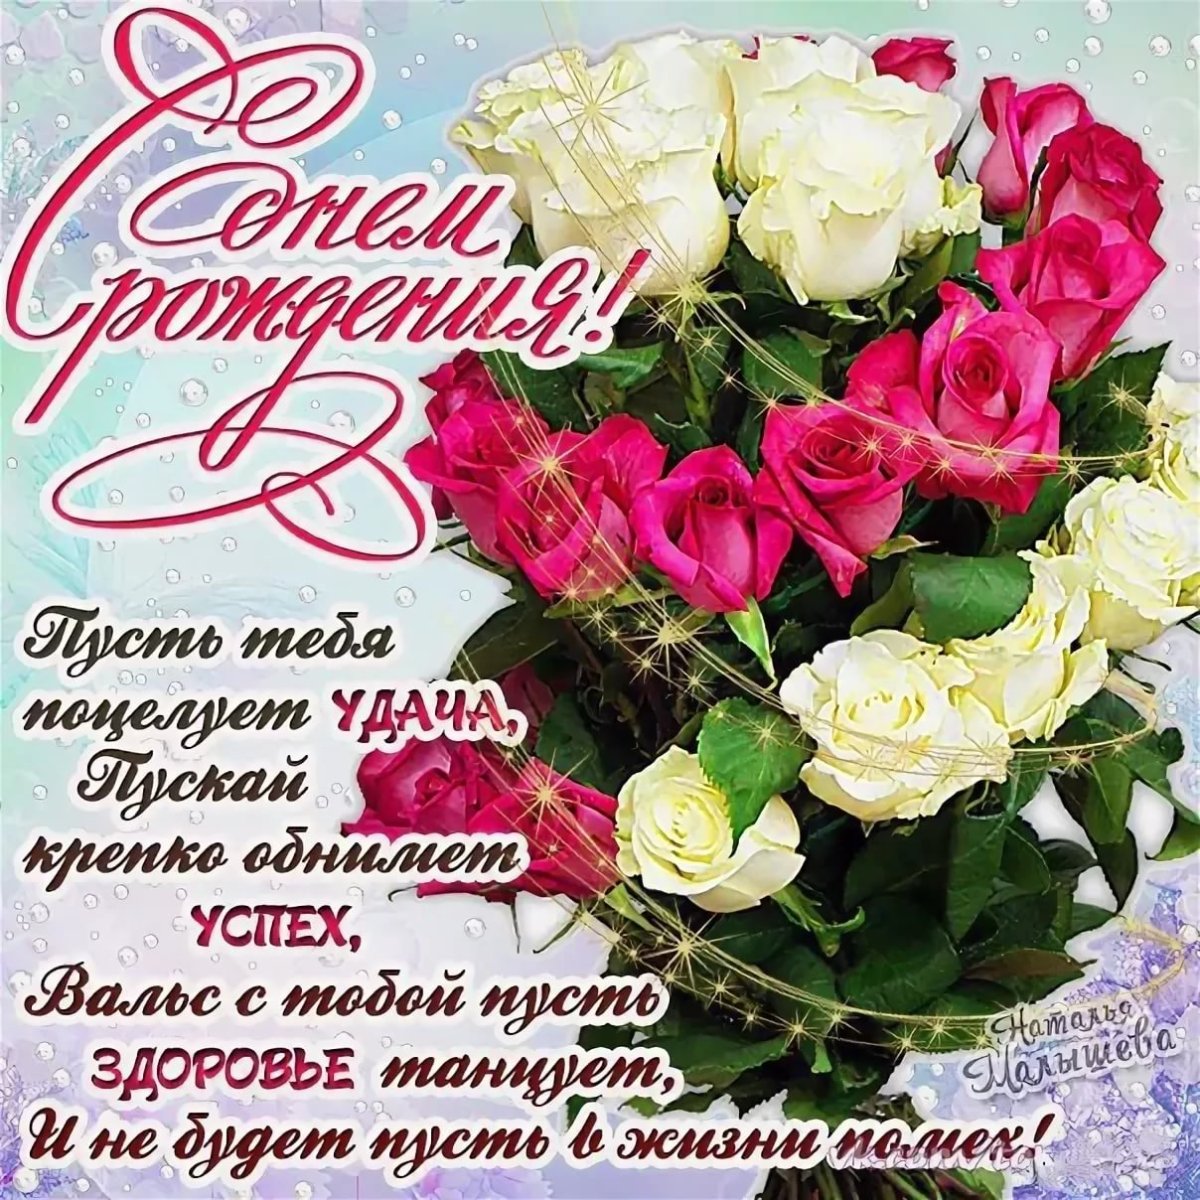 Душевные поздравления с днем рождения сватье 💐 – бесплатные пожелания на Pozdravim